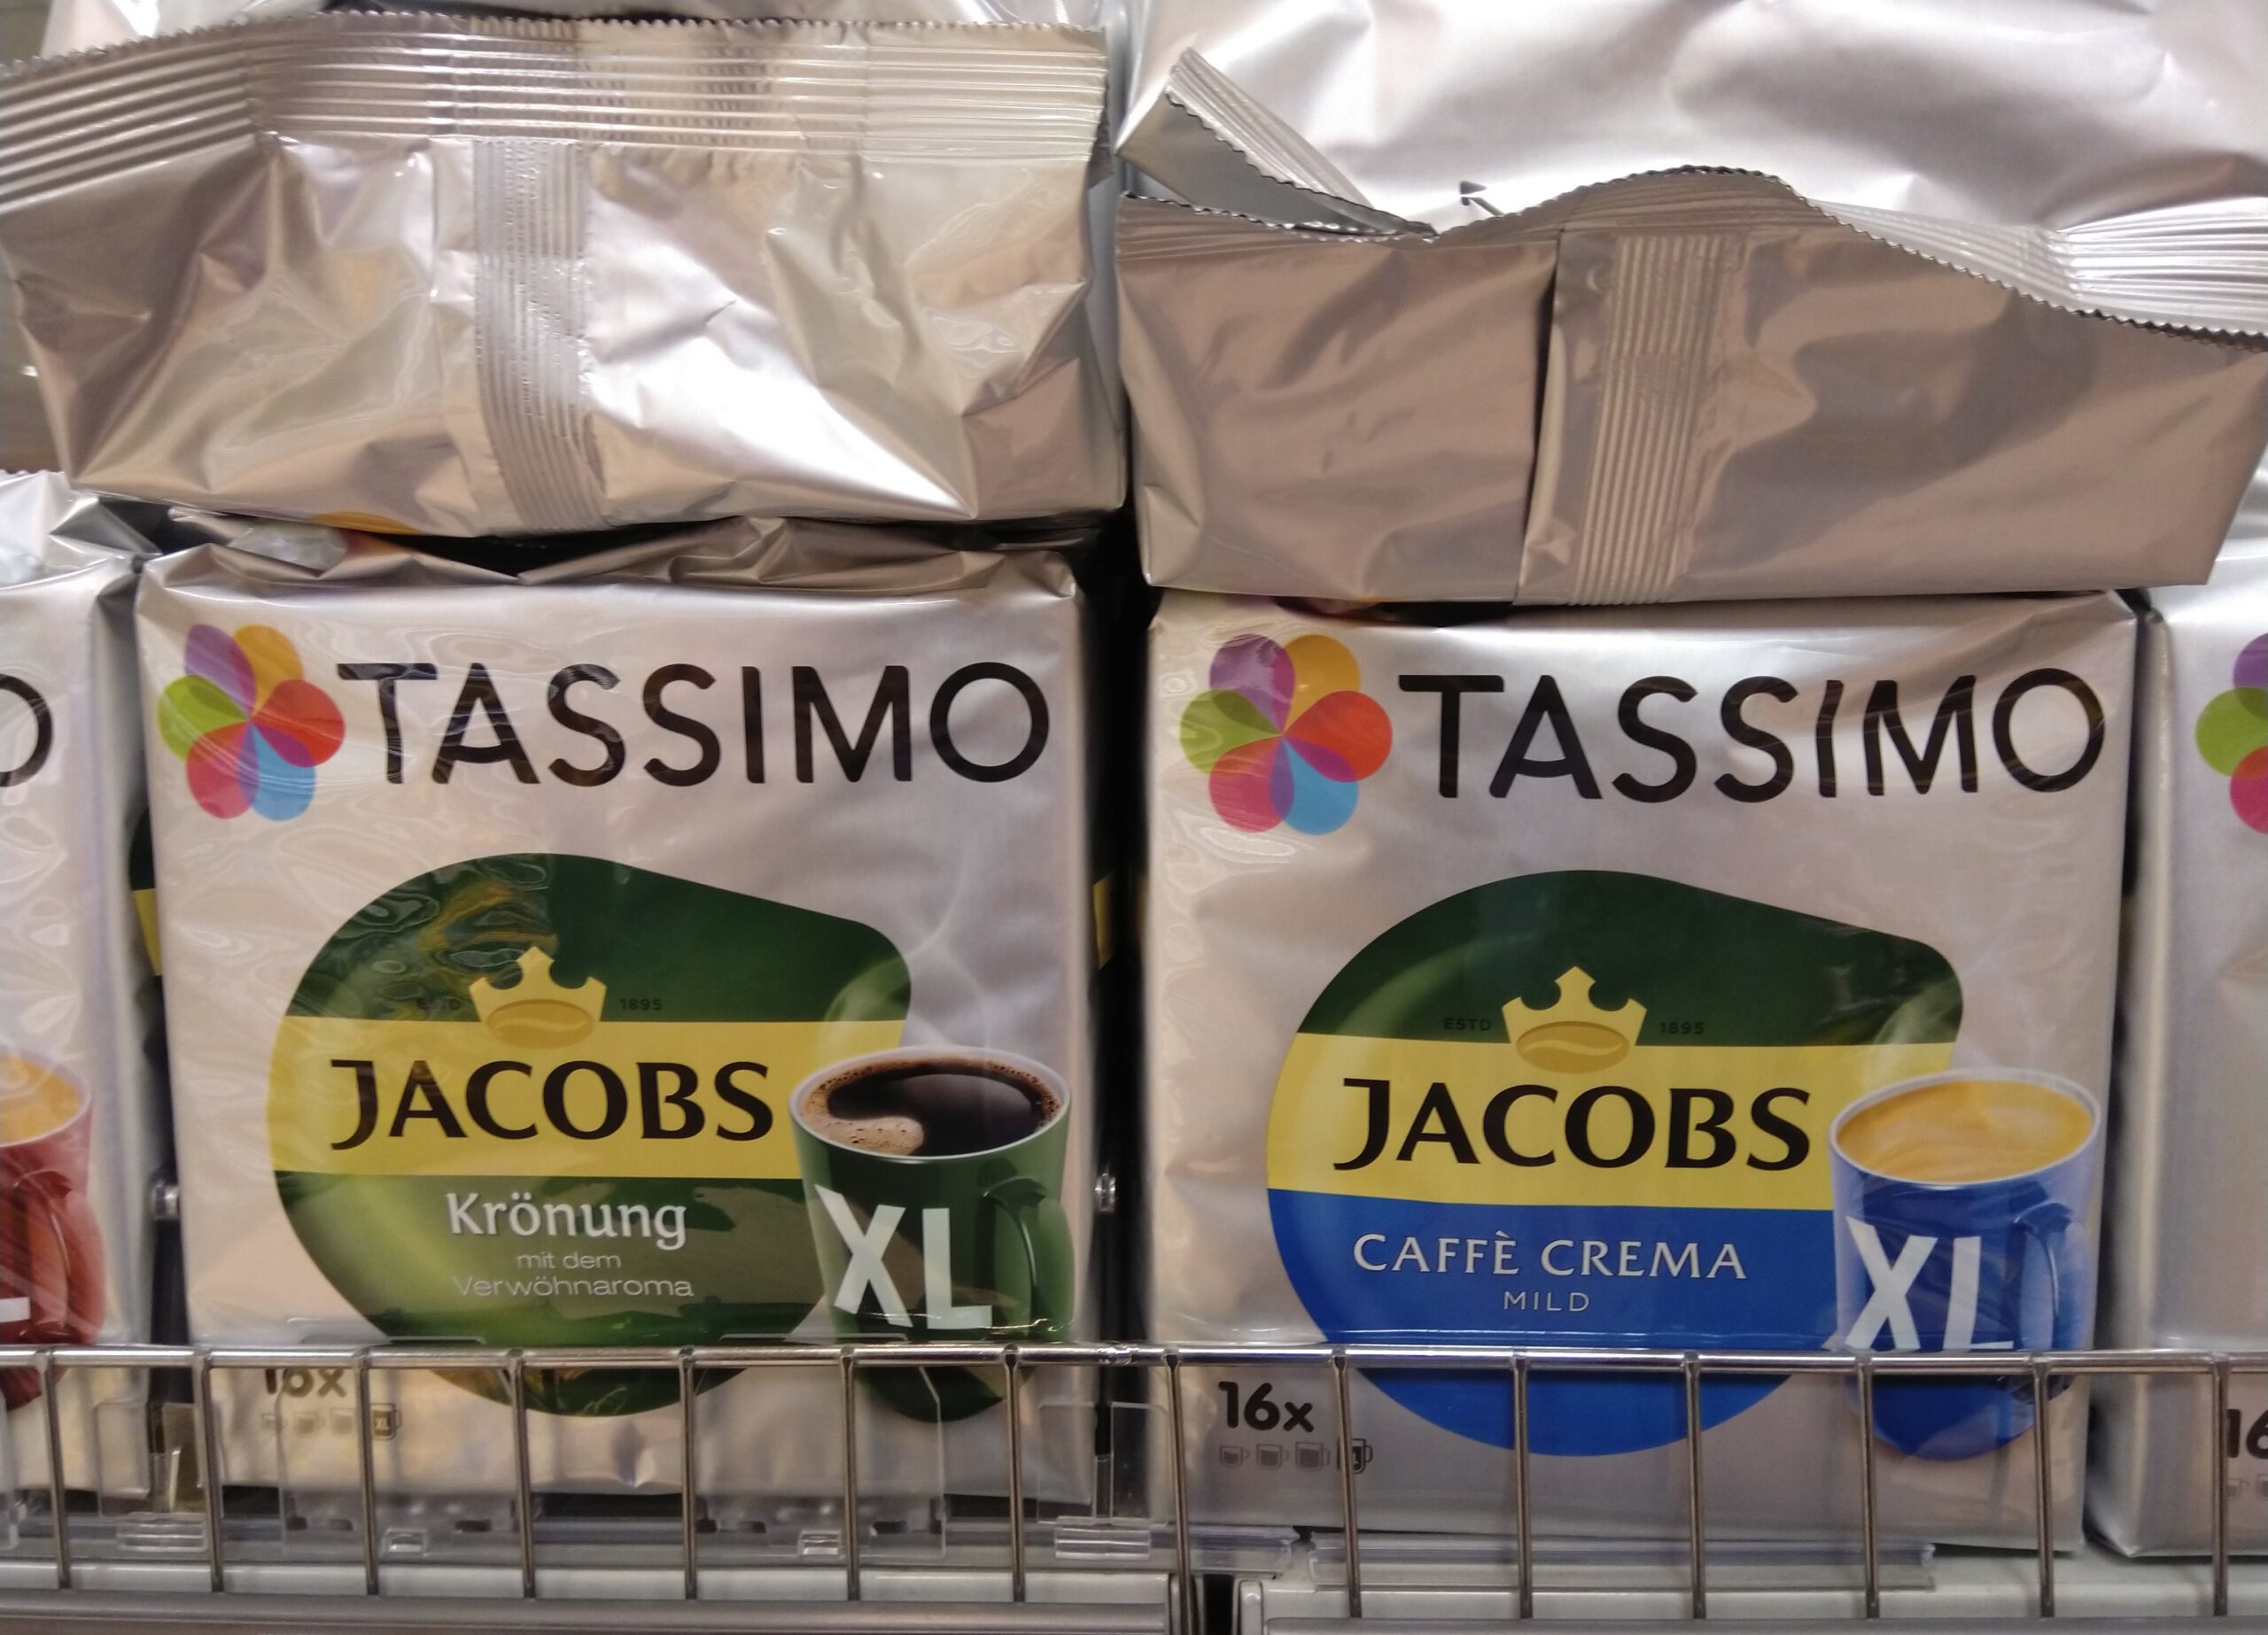 Tassimo: Eiswürfelform gratis